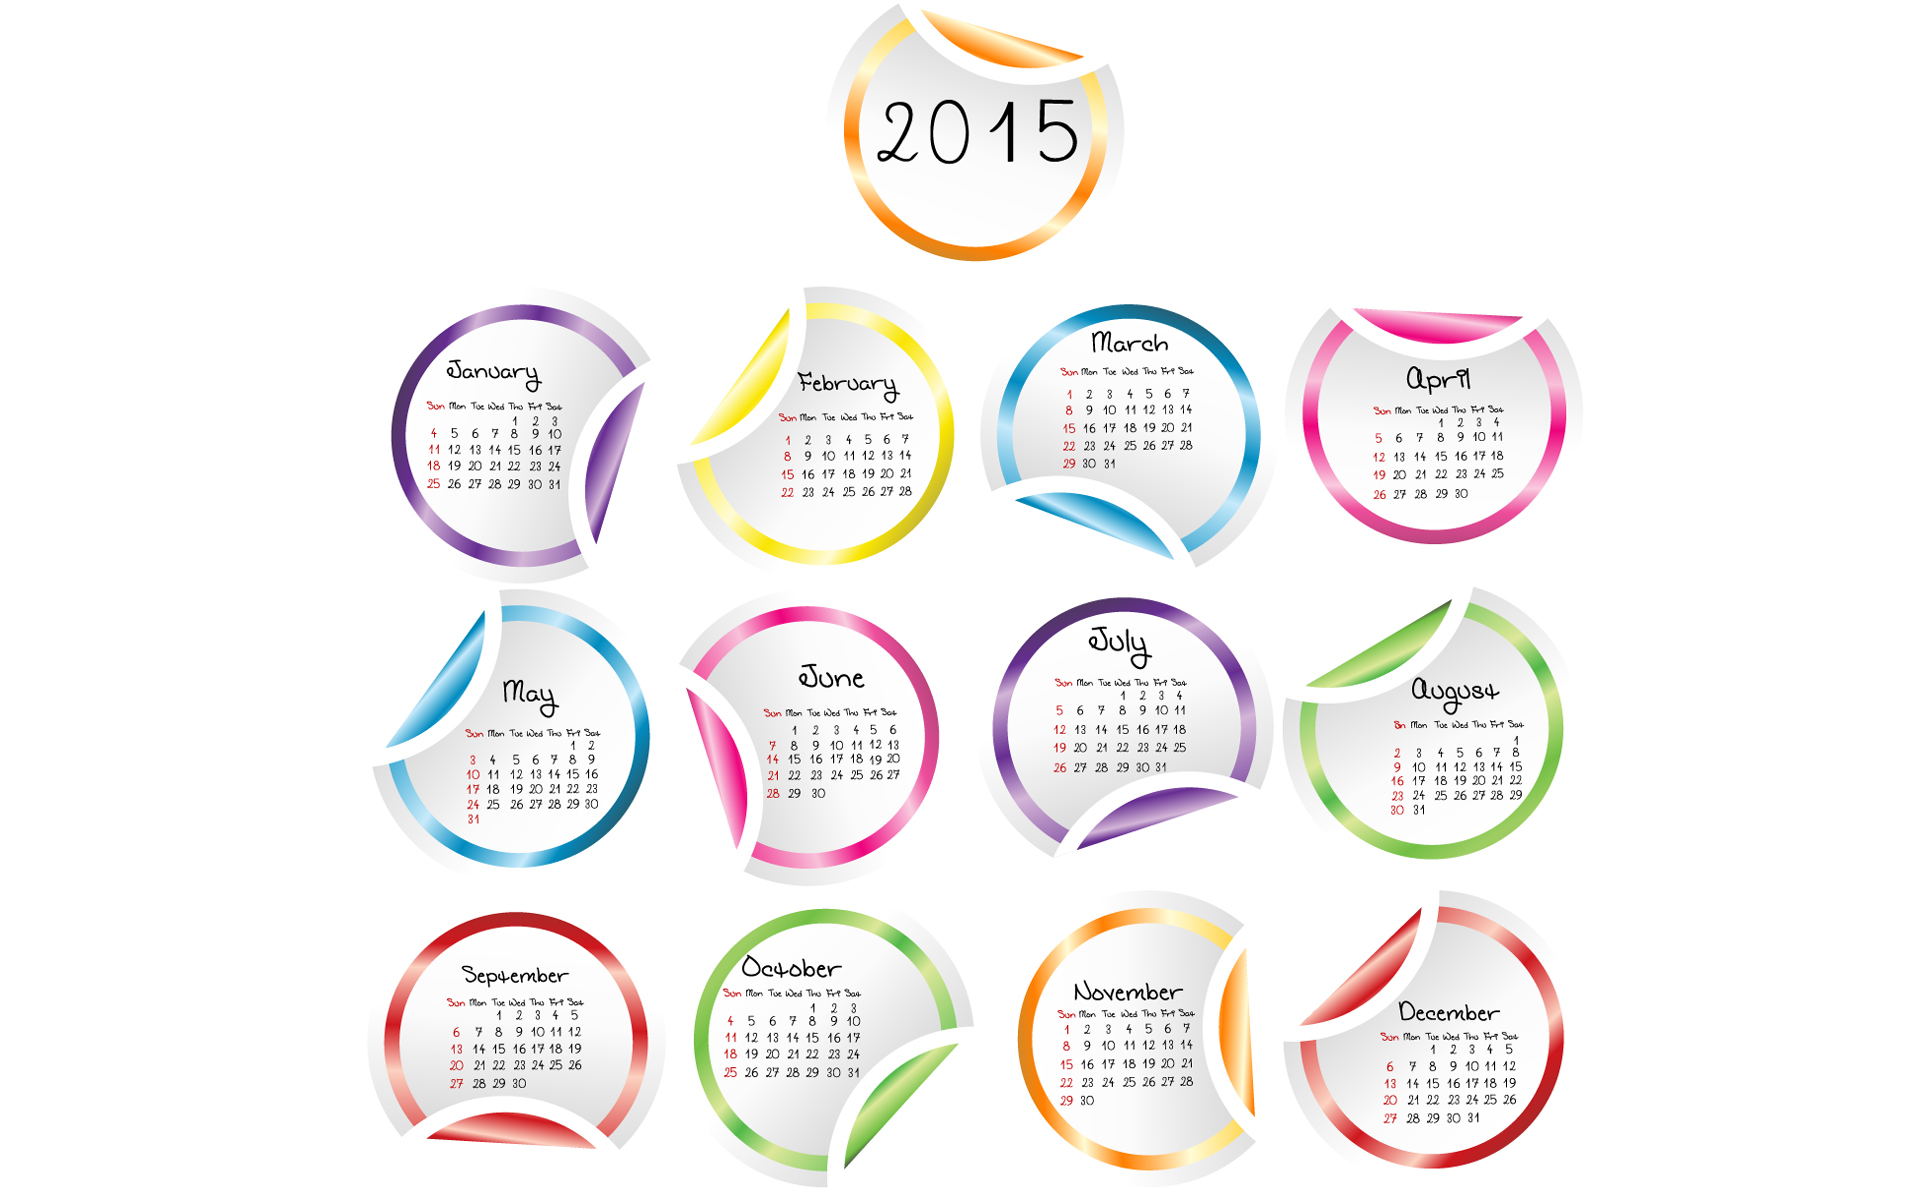 Скачать обои Новый Год 2015 на телефон бесплатно